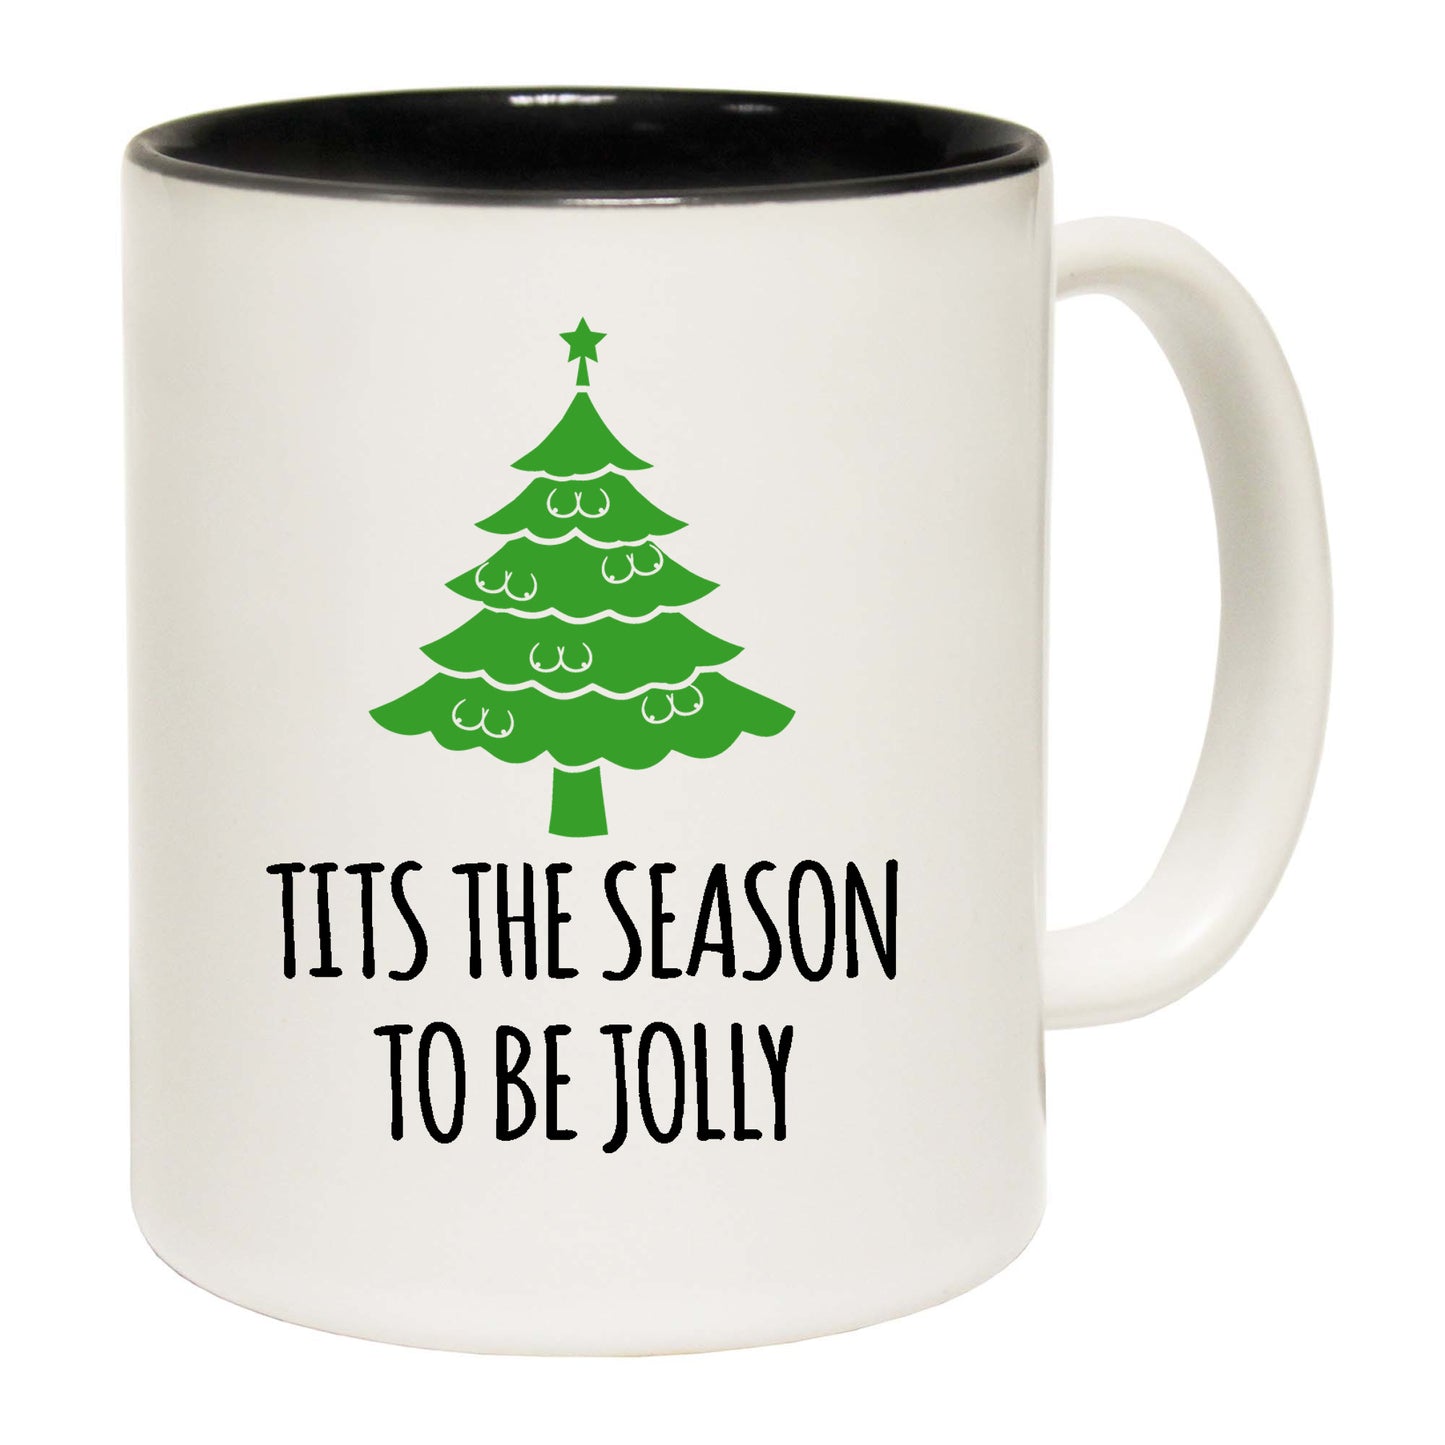 The Christmas Hub - Christmas Tits The Season To Be Jolly - Funny Coffee Mug